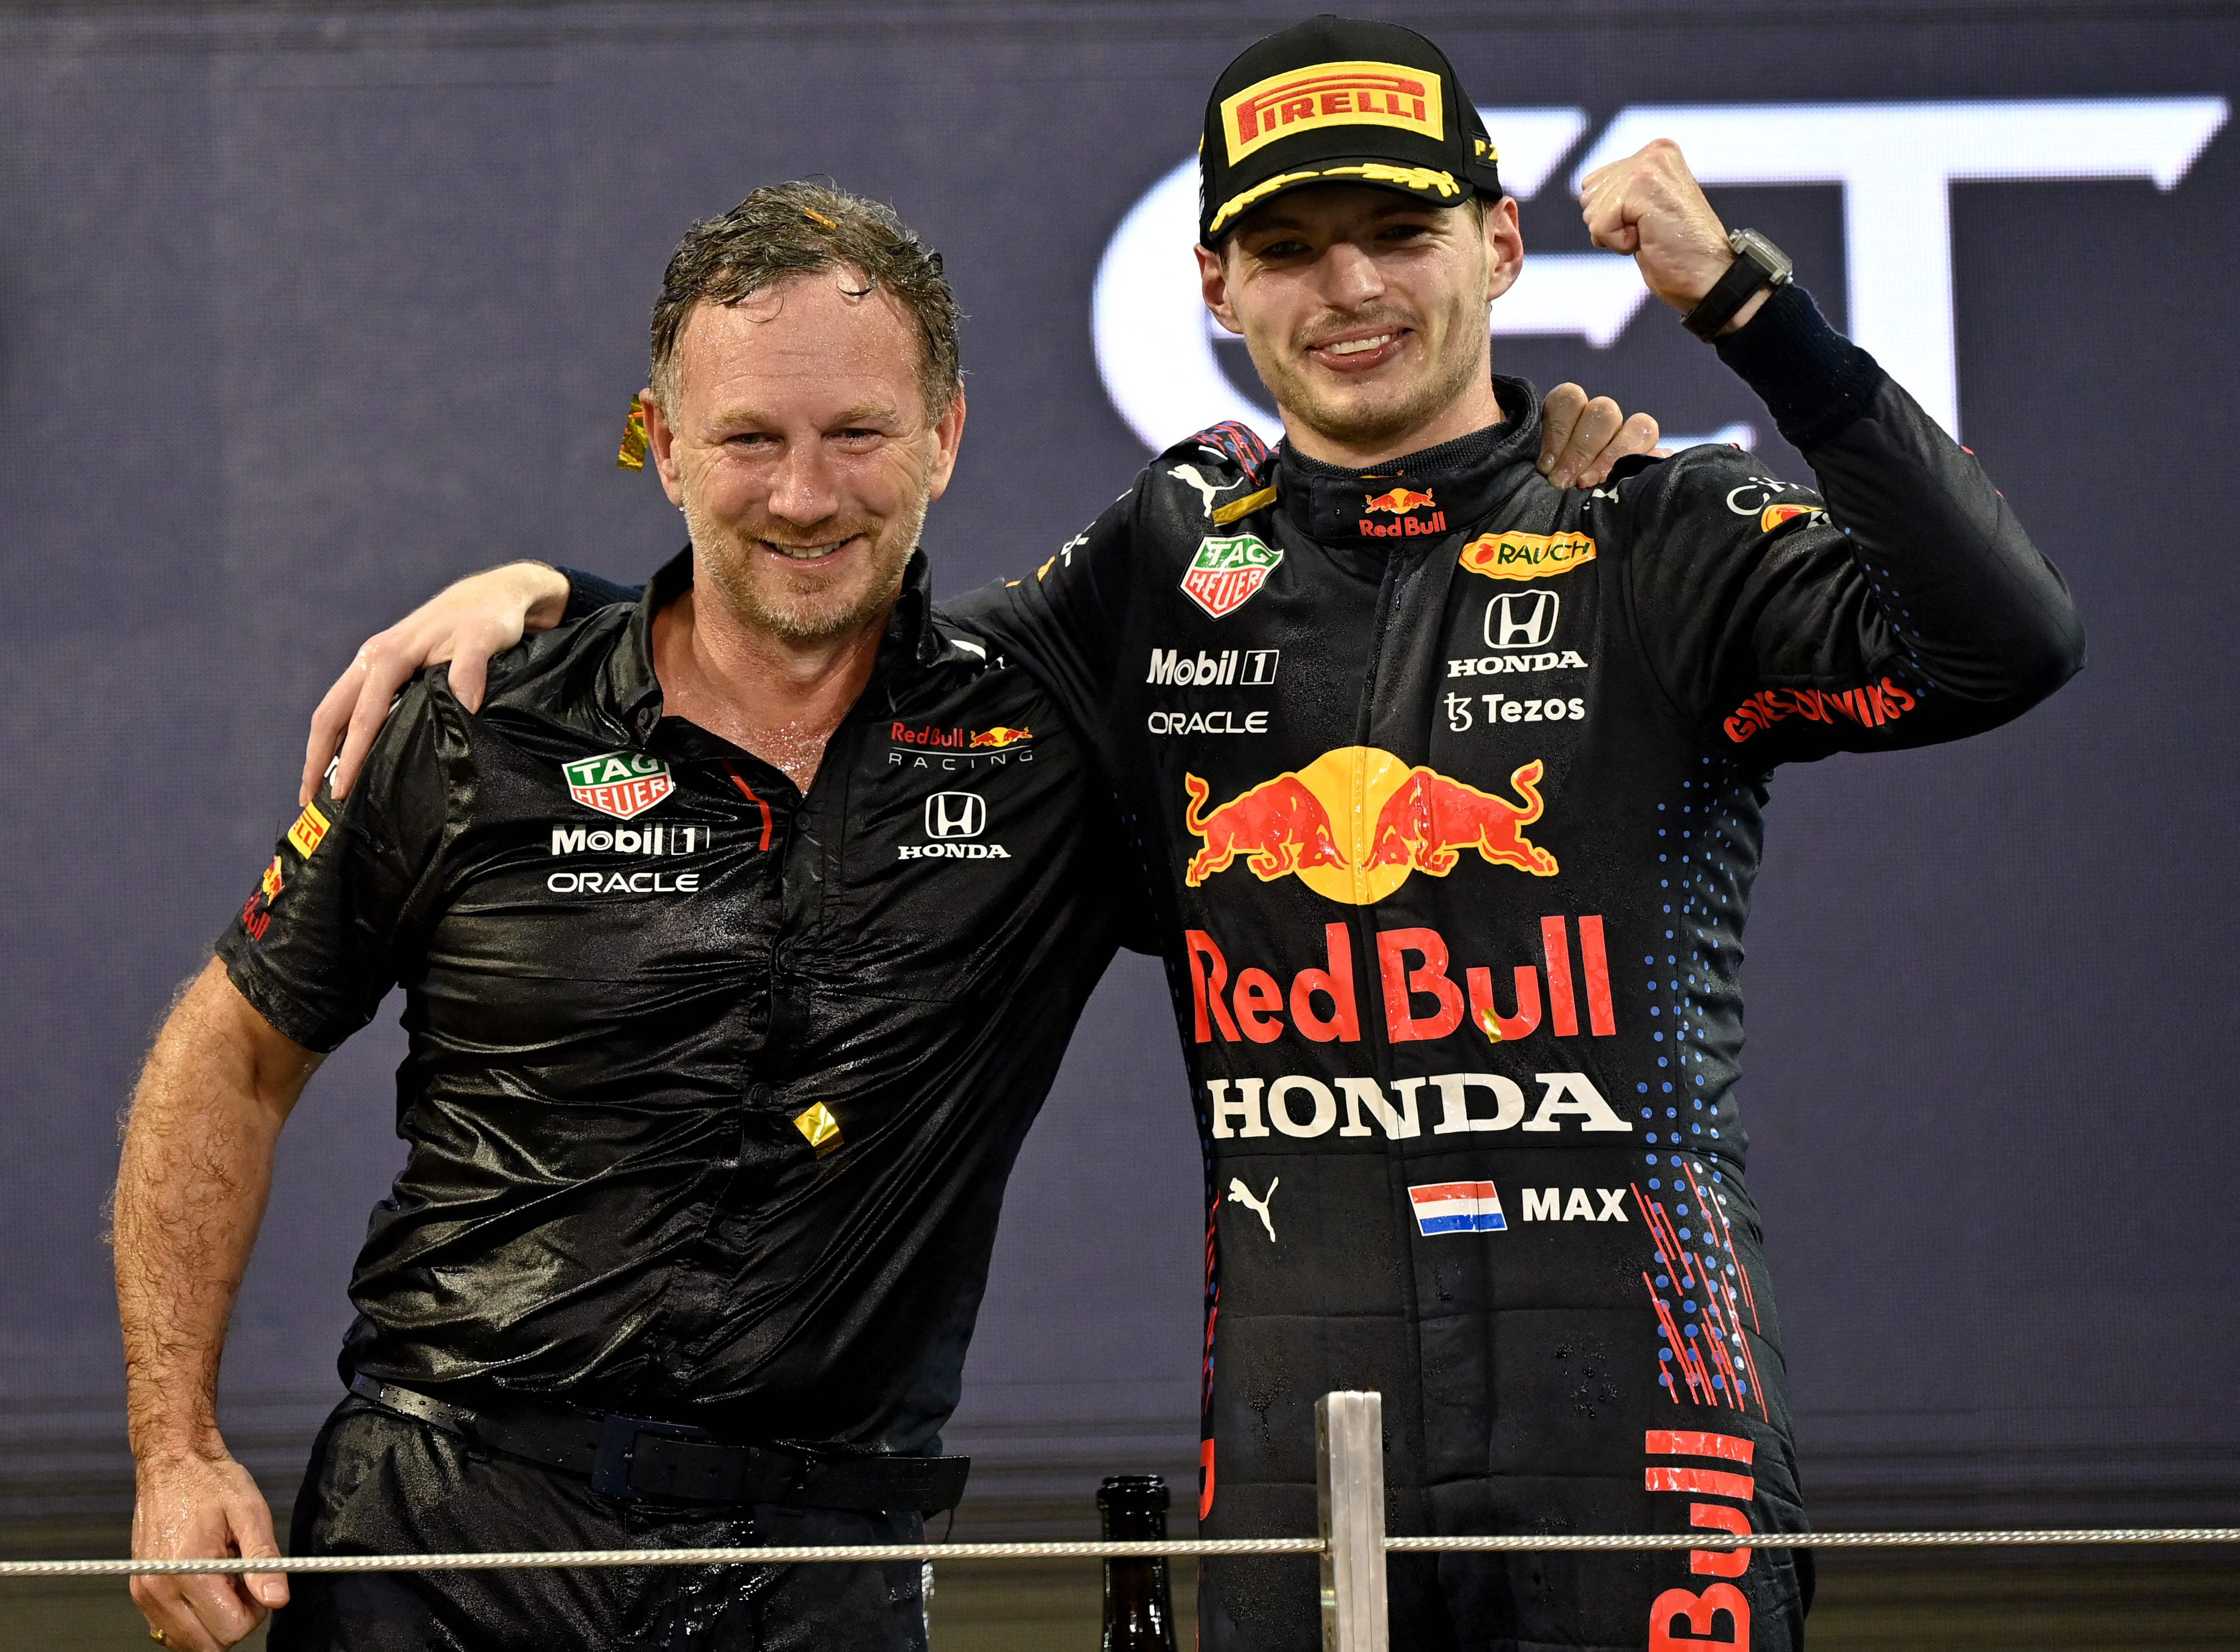 Horner leitet das Red Bull Racing Team – für das Max Verstappen fährt